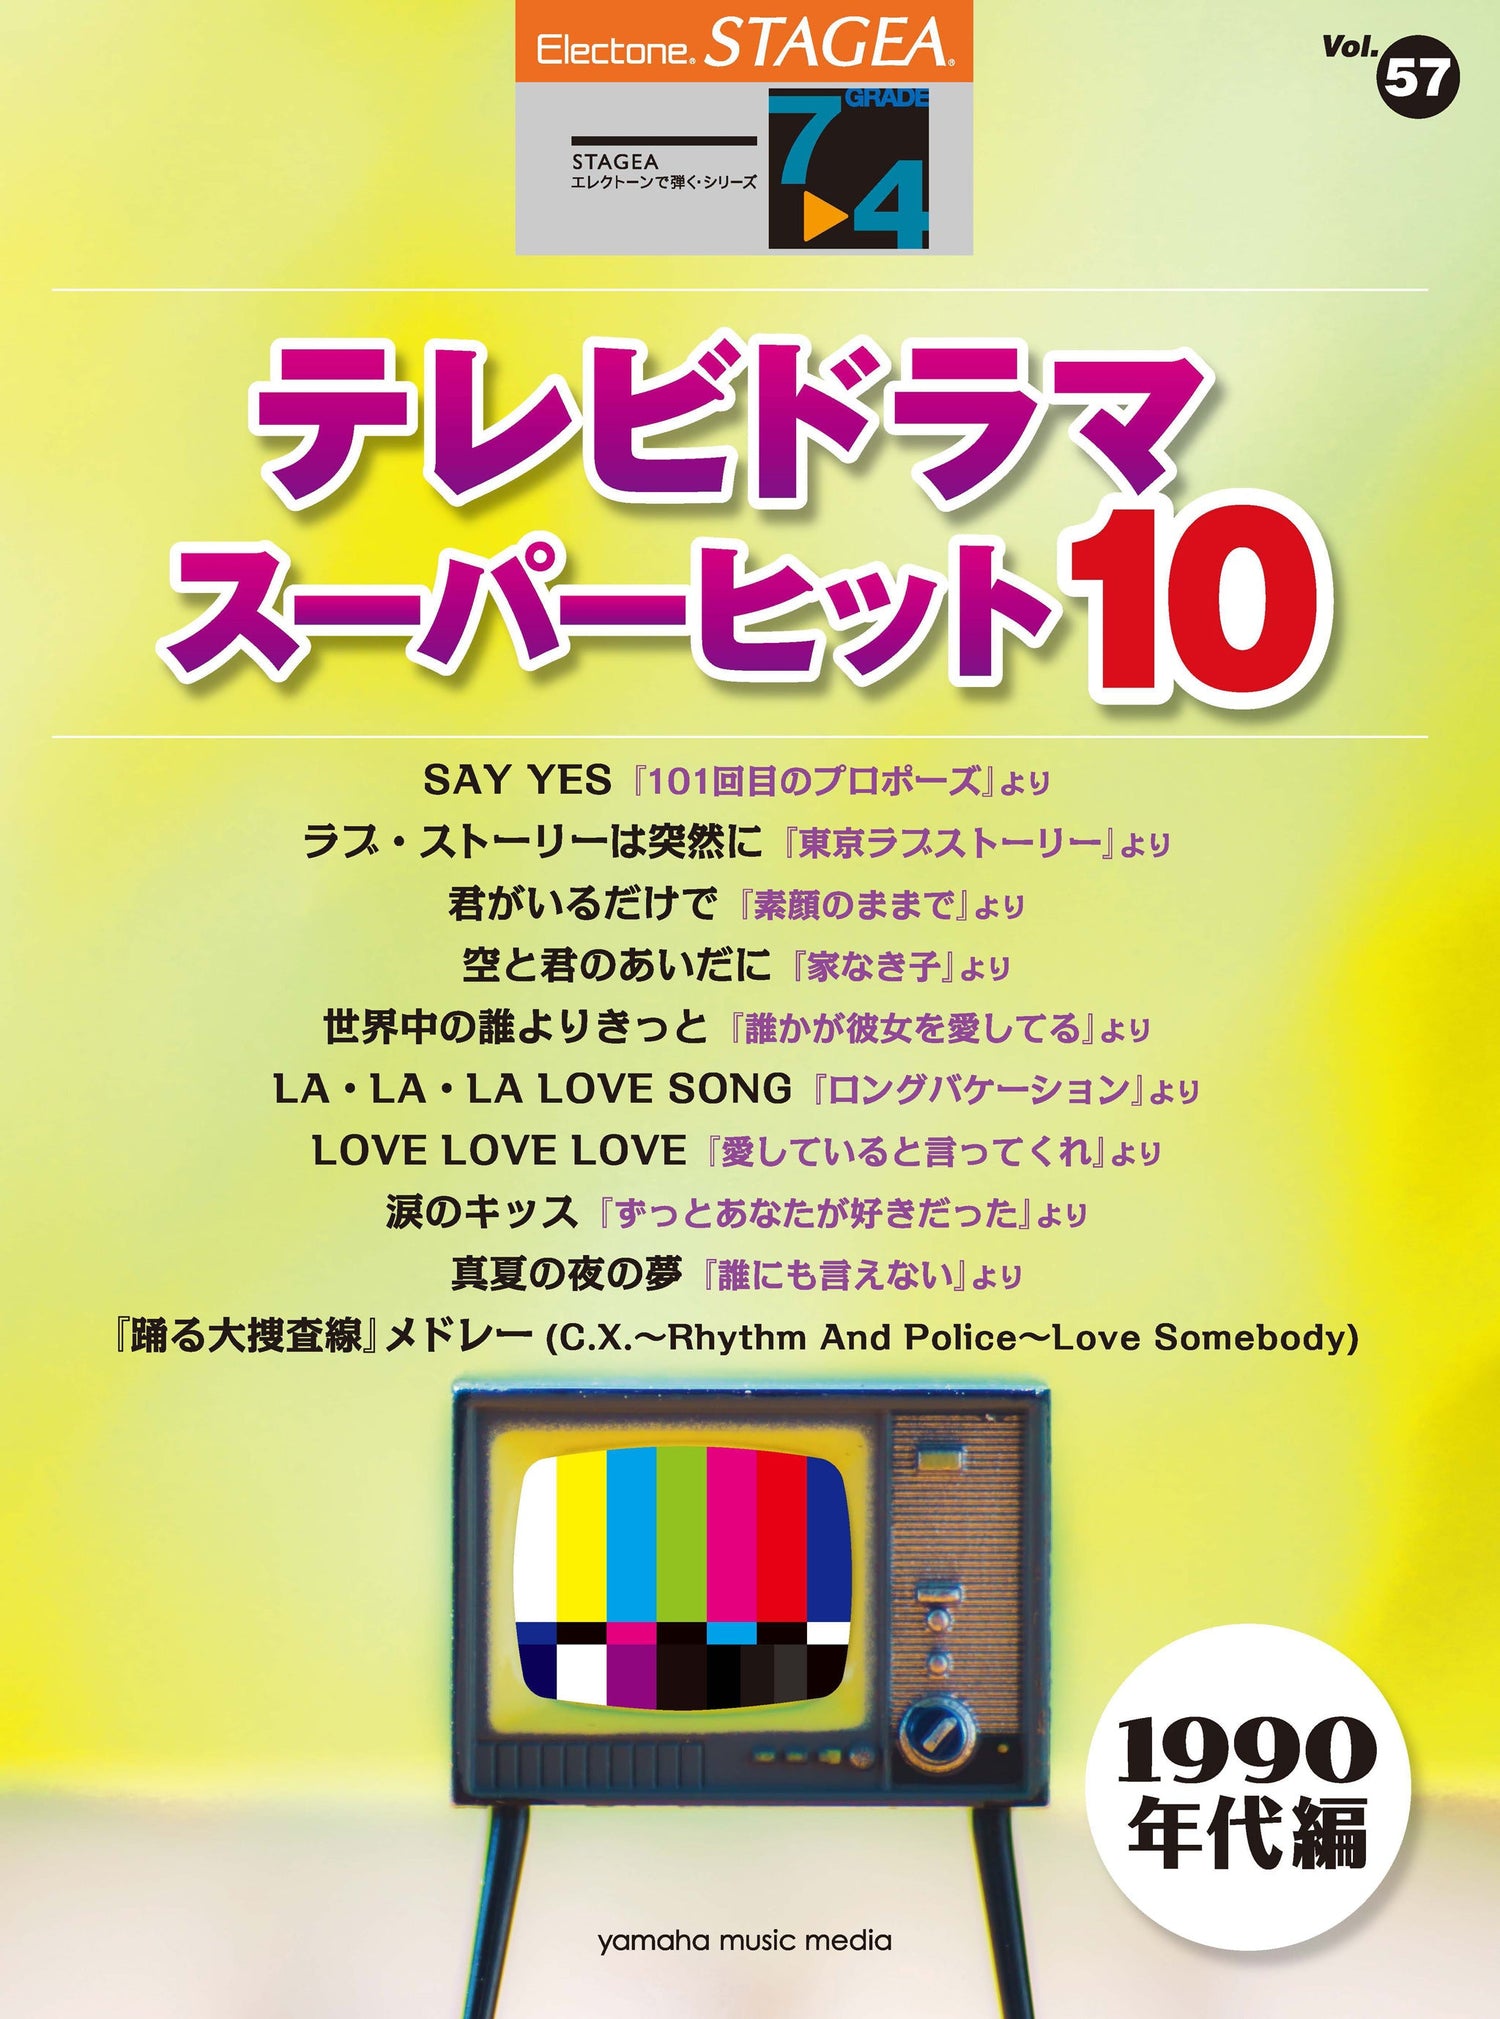 STAGEA エレクトーンで弾く 7～4級 Vol.57 テレビドラマ・スーパーヒット10(1990年代編)